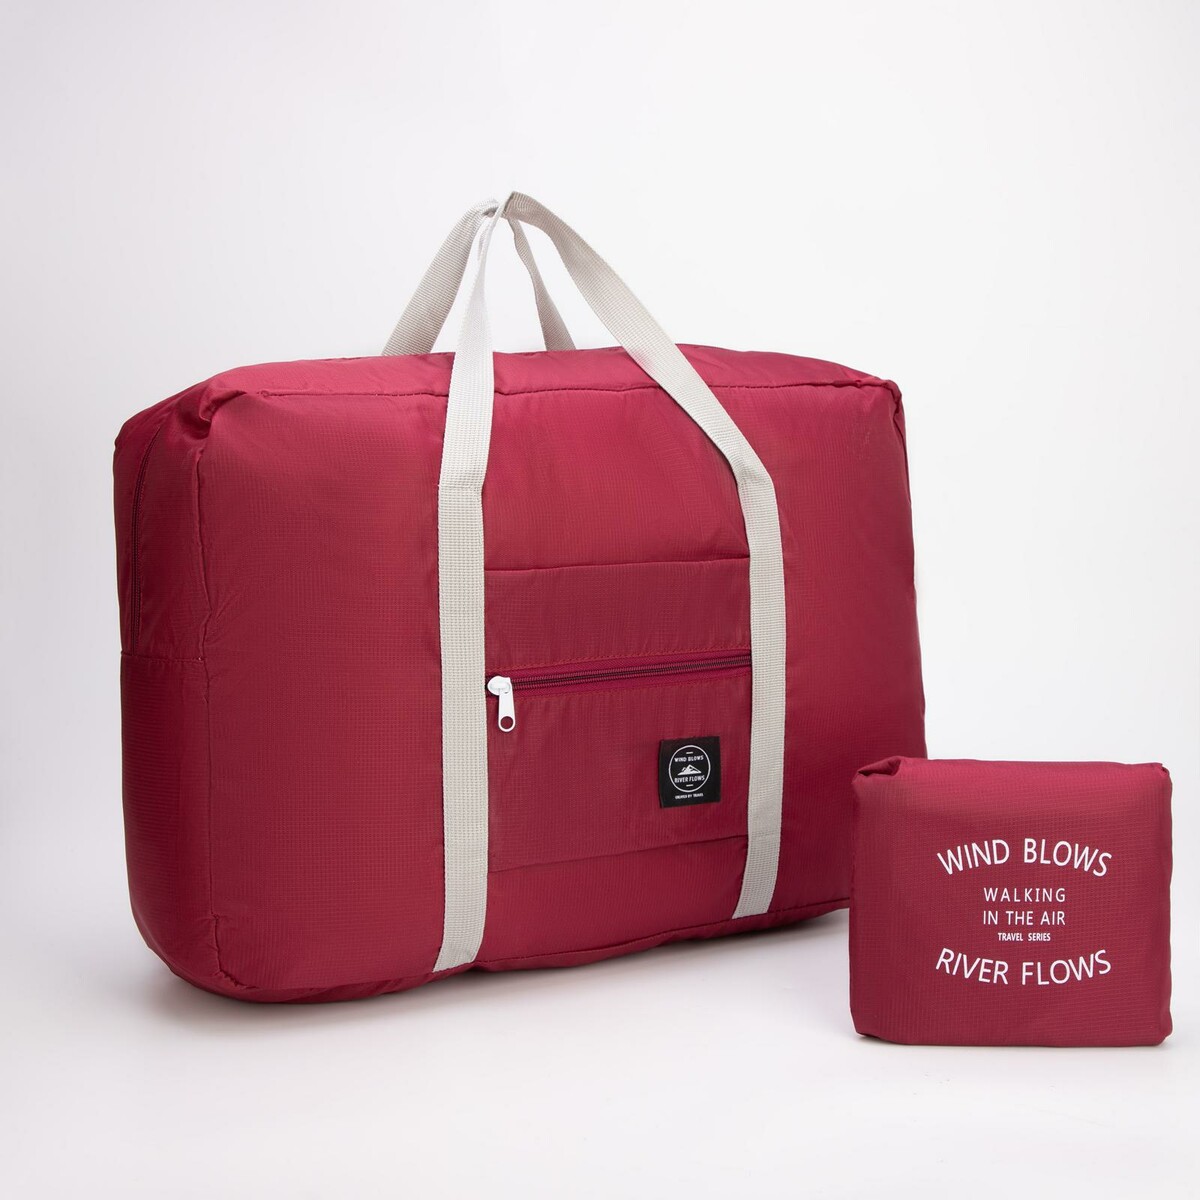 Сумка дорожная, складная, отдел на молнии, держатель для чемодана, наружный карман, цвет бордовый сумка дорожная на молнии наружный карман держатель для чемодана бордовый